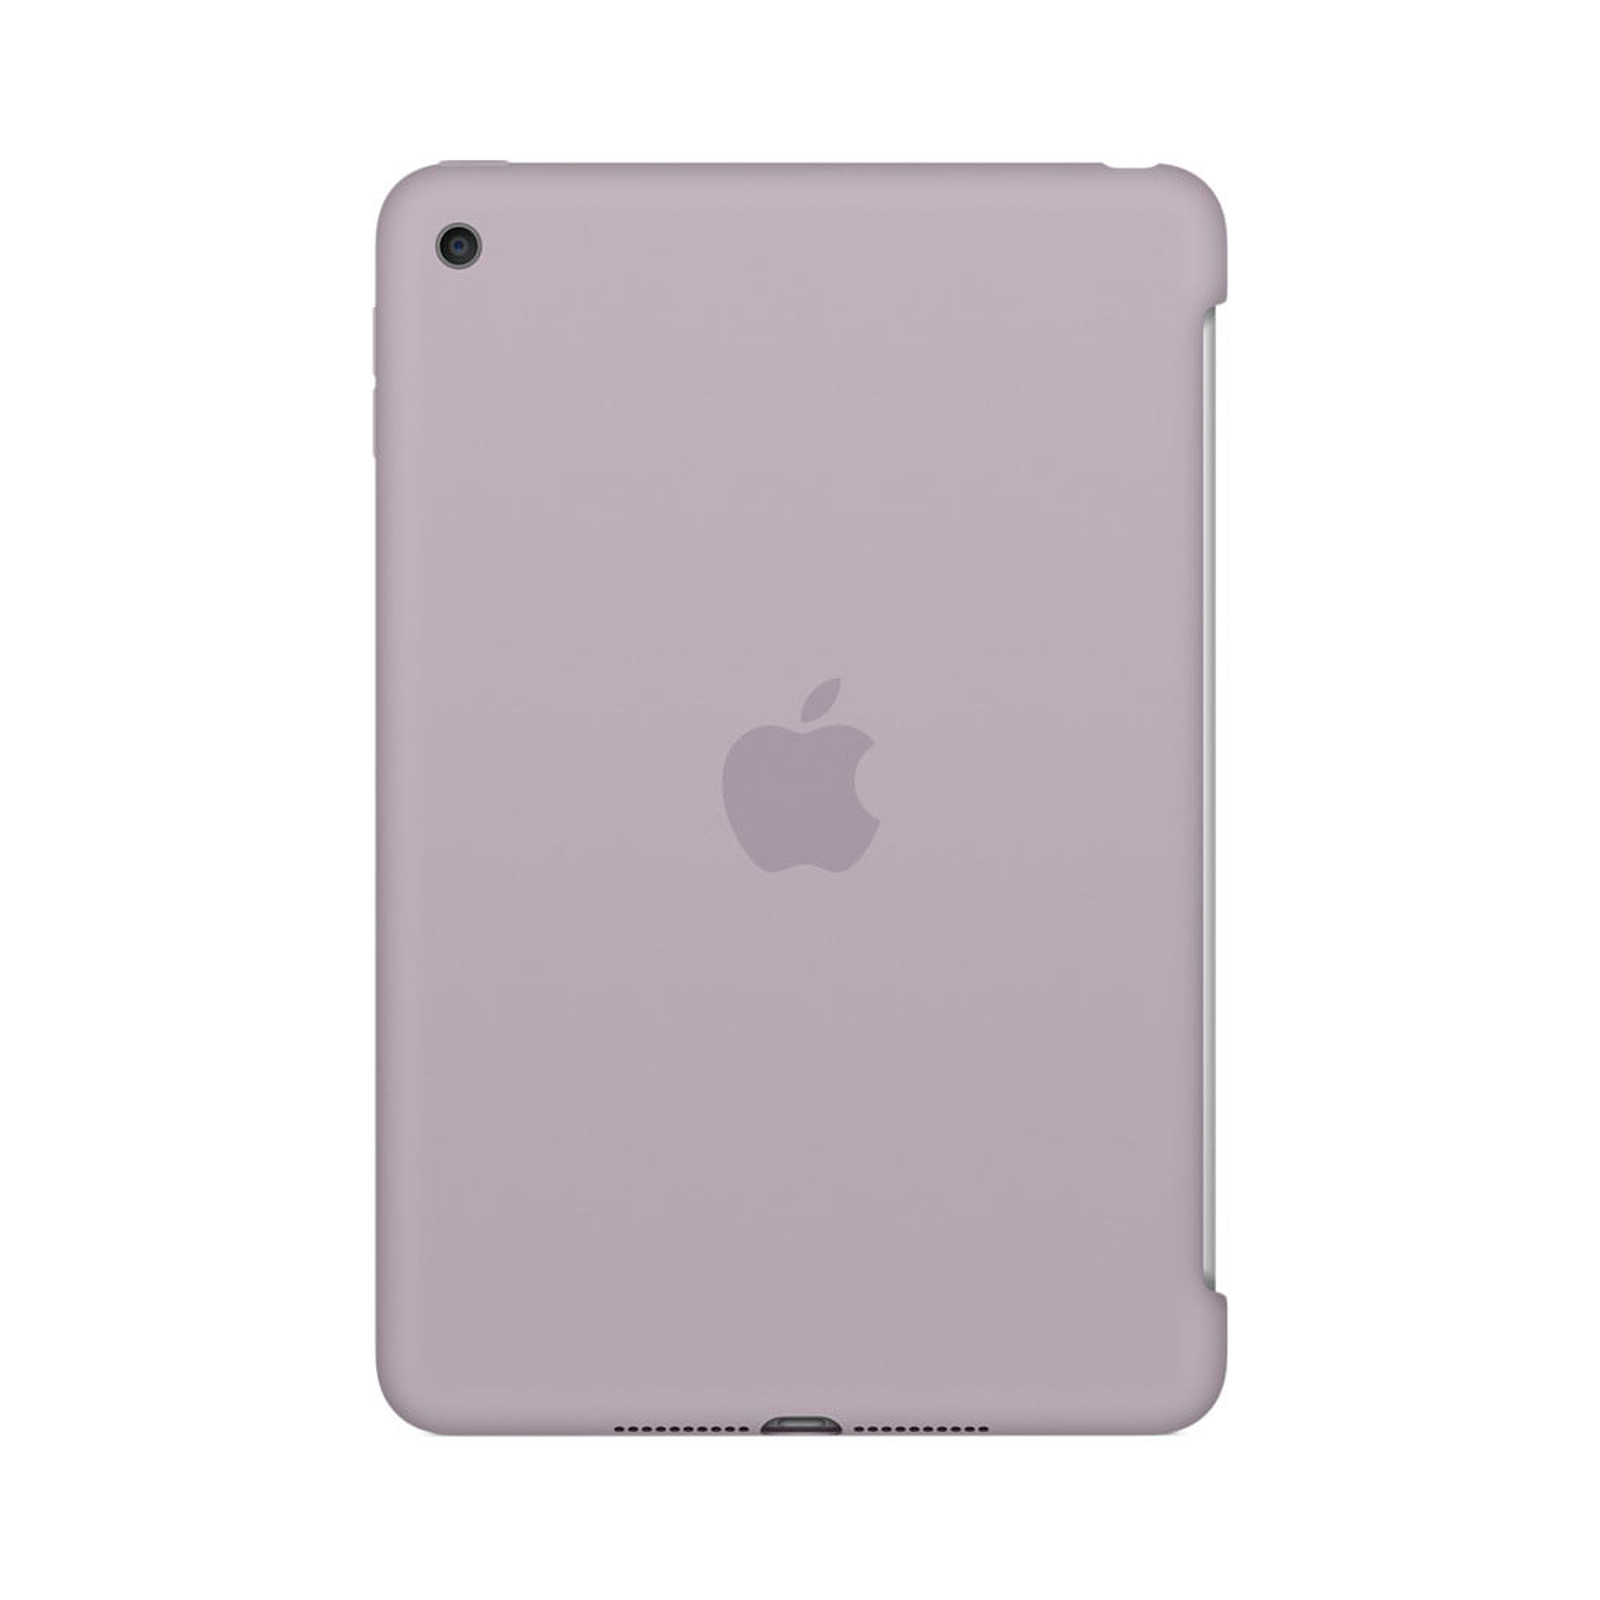 Apple iPad mini 4 Silicone Case Lavande - Etui tablette Apple